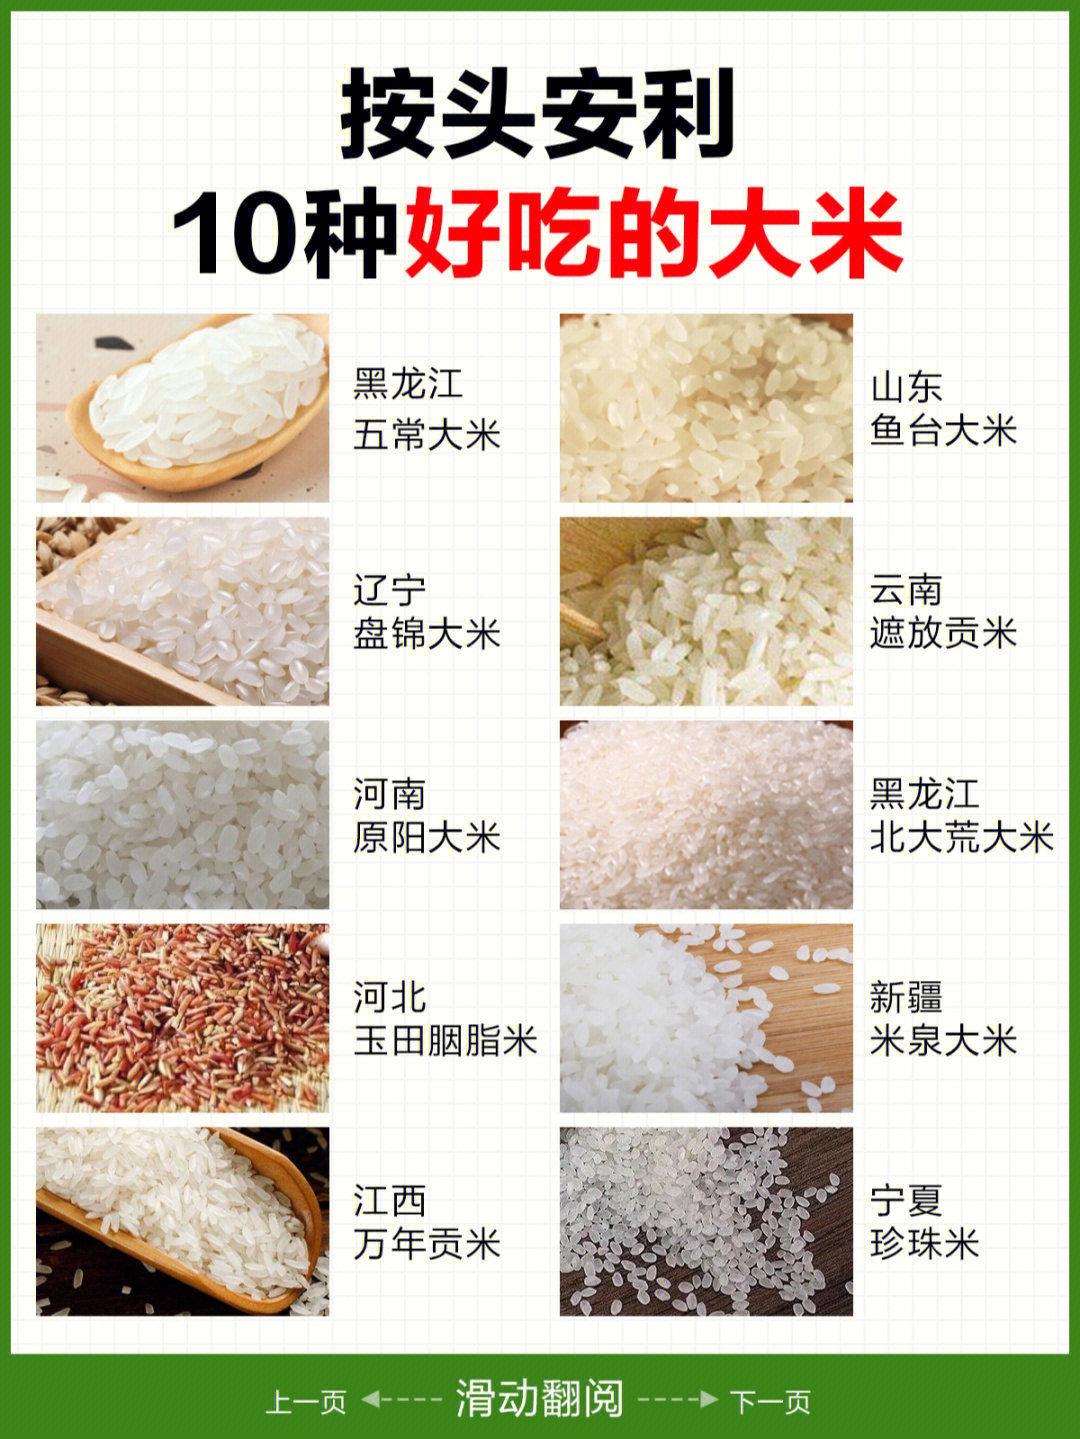 分为籼米,粳米,糯米三种大米性平,味甘